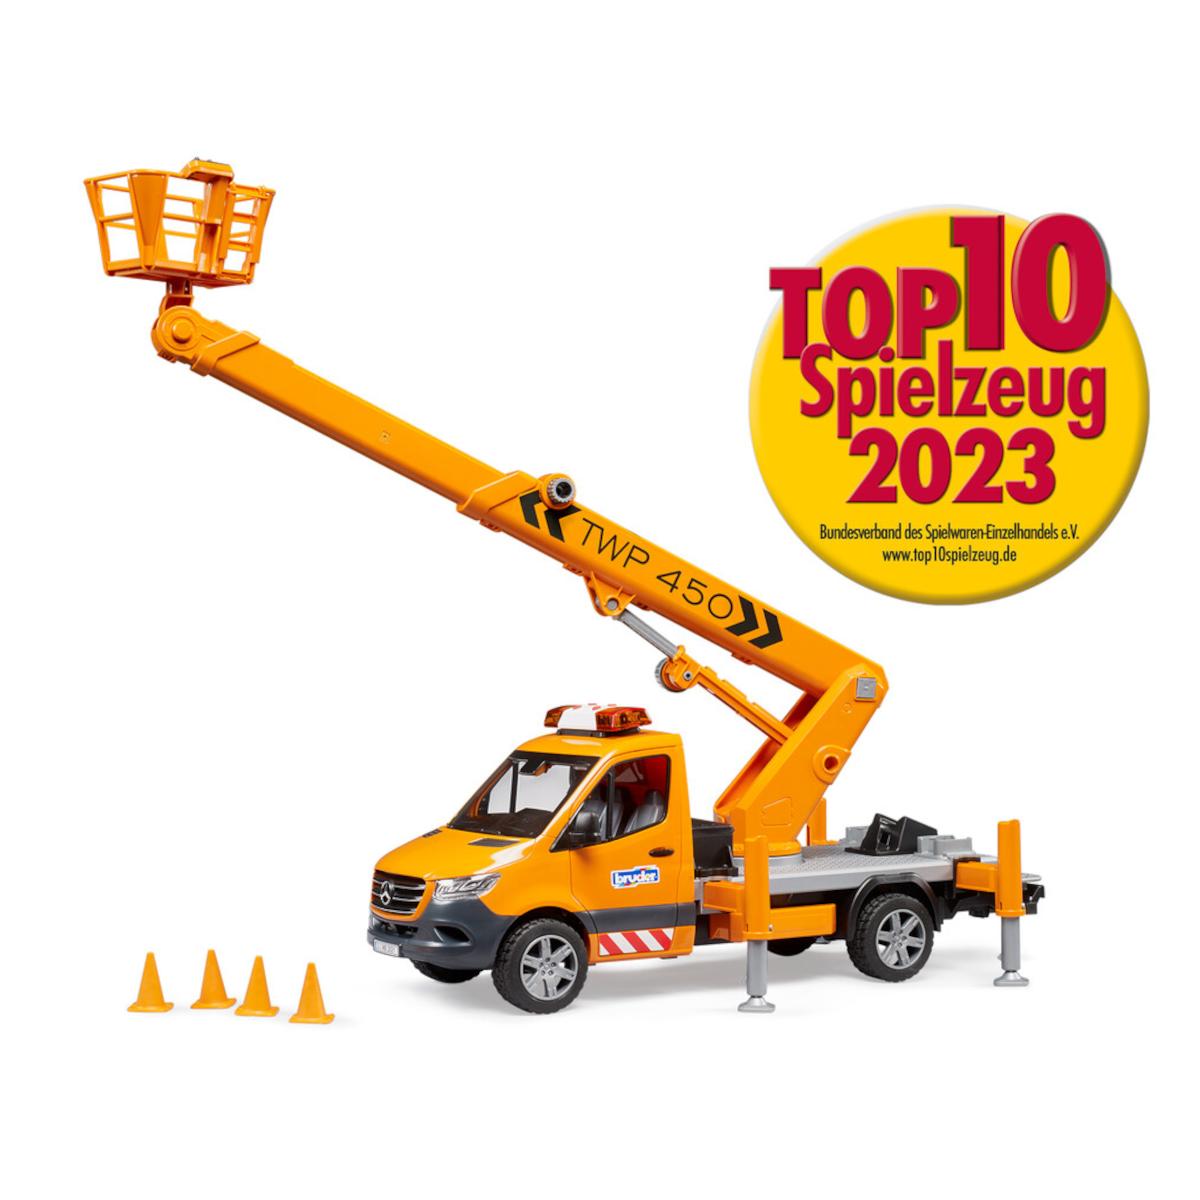 Top 10 Spielzeug: Bruder MB Sprinter Arbeitsbühne auf der Hitliste 2023